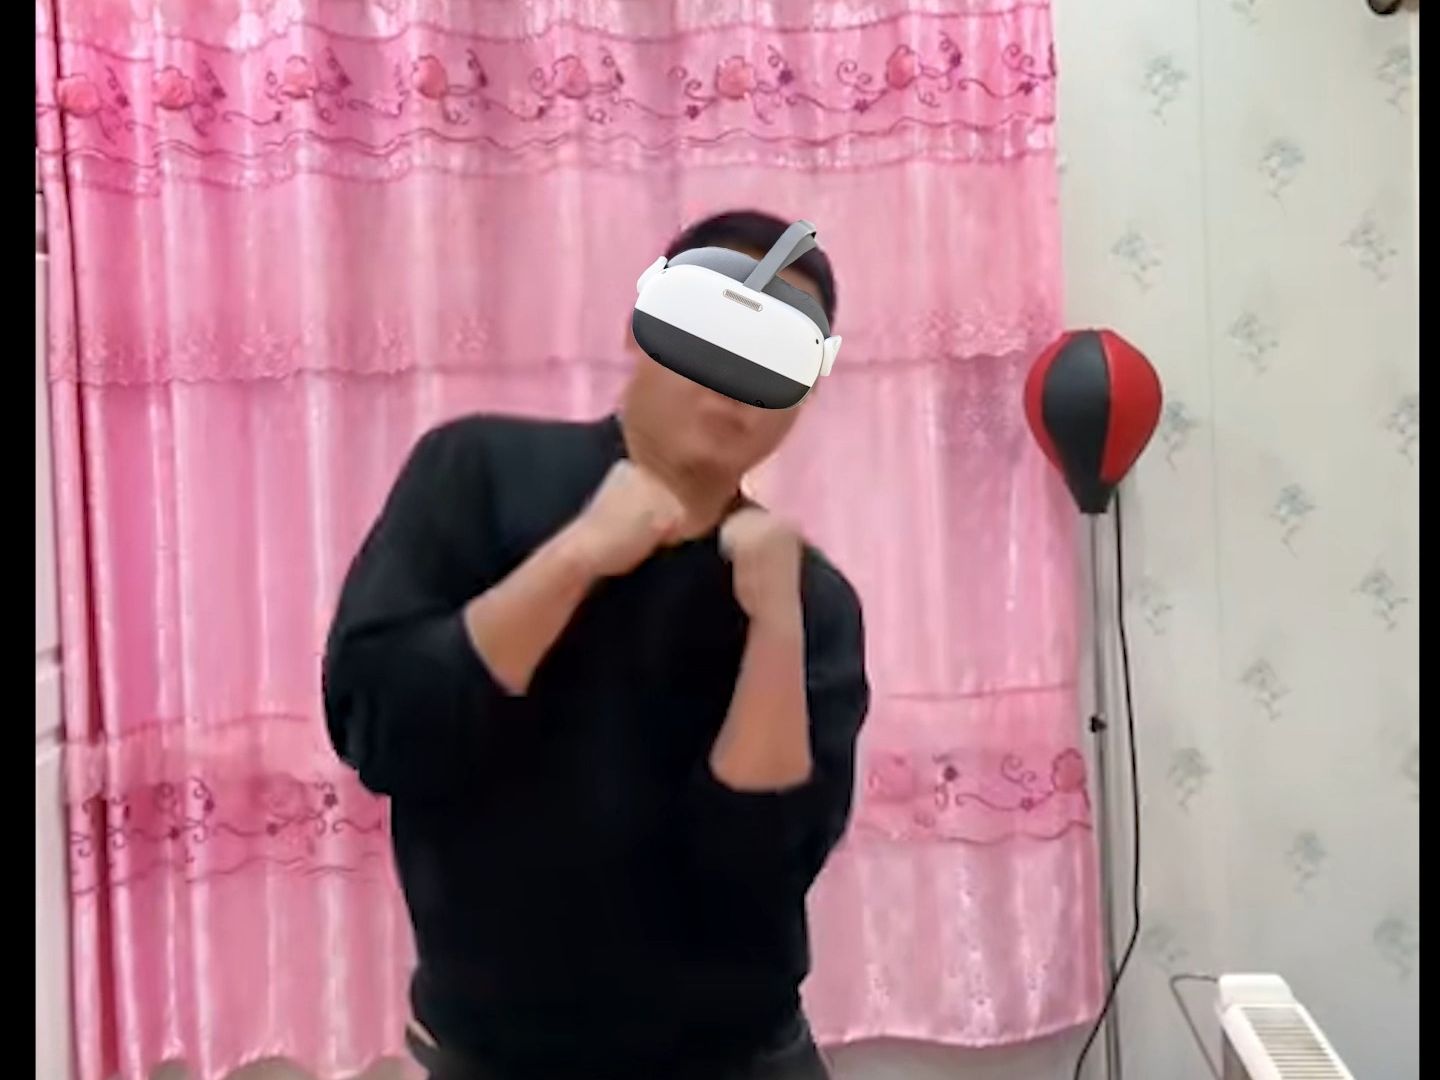 摇摆拳法的实战应用...其实是VR